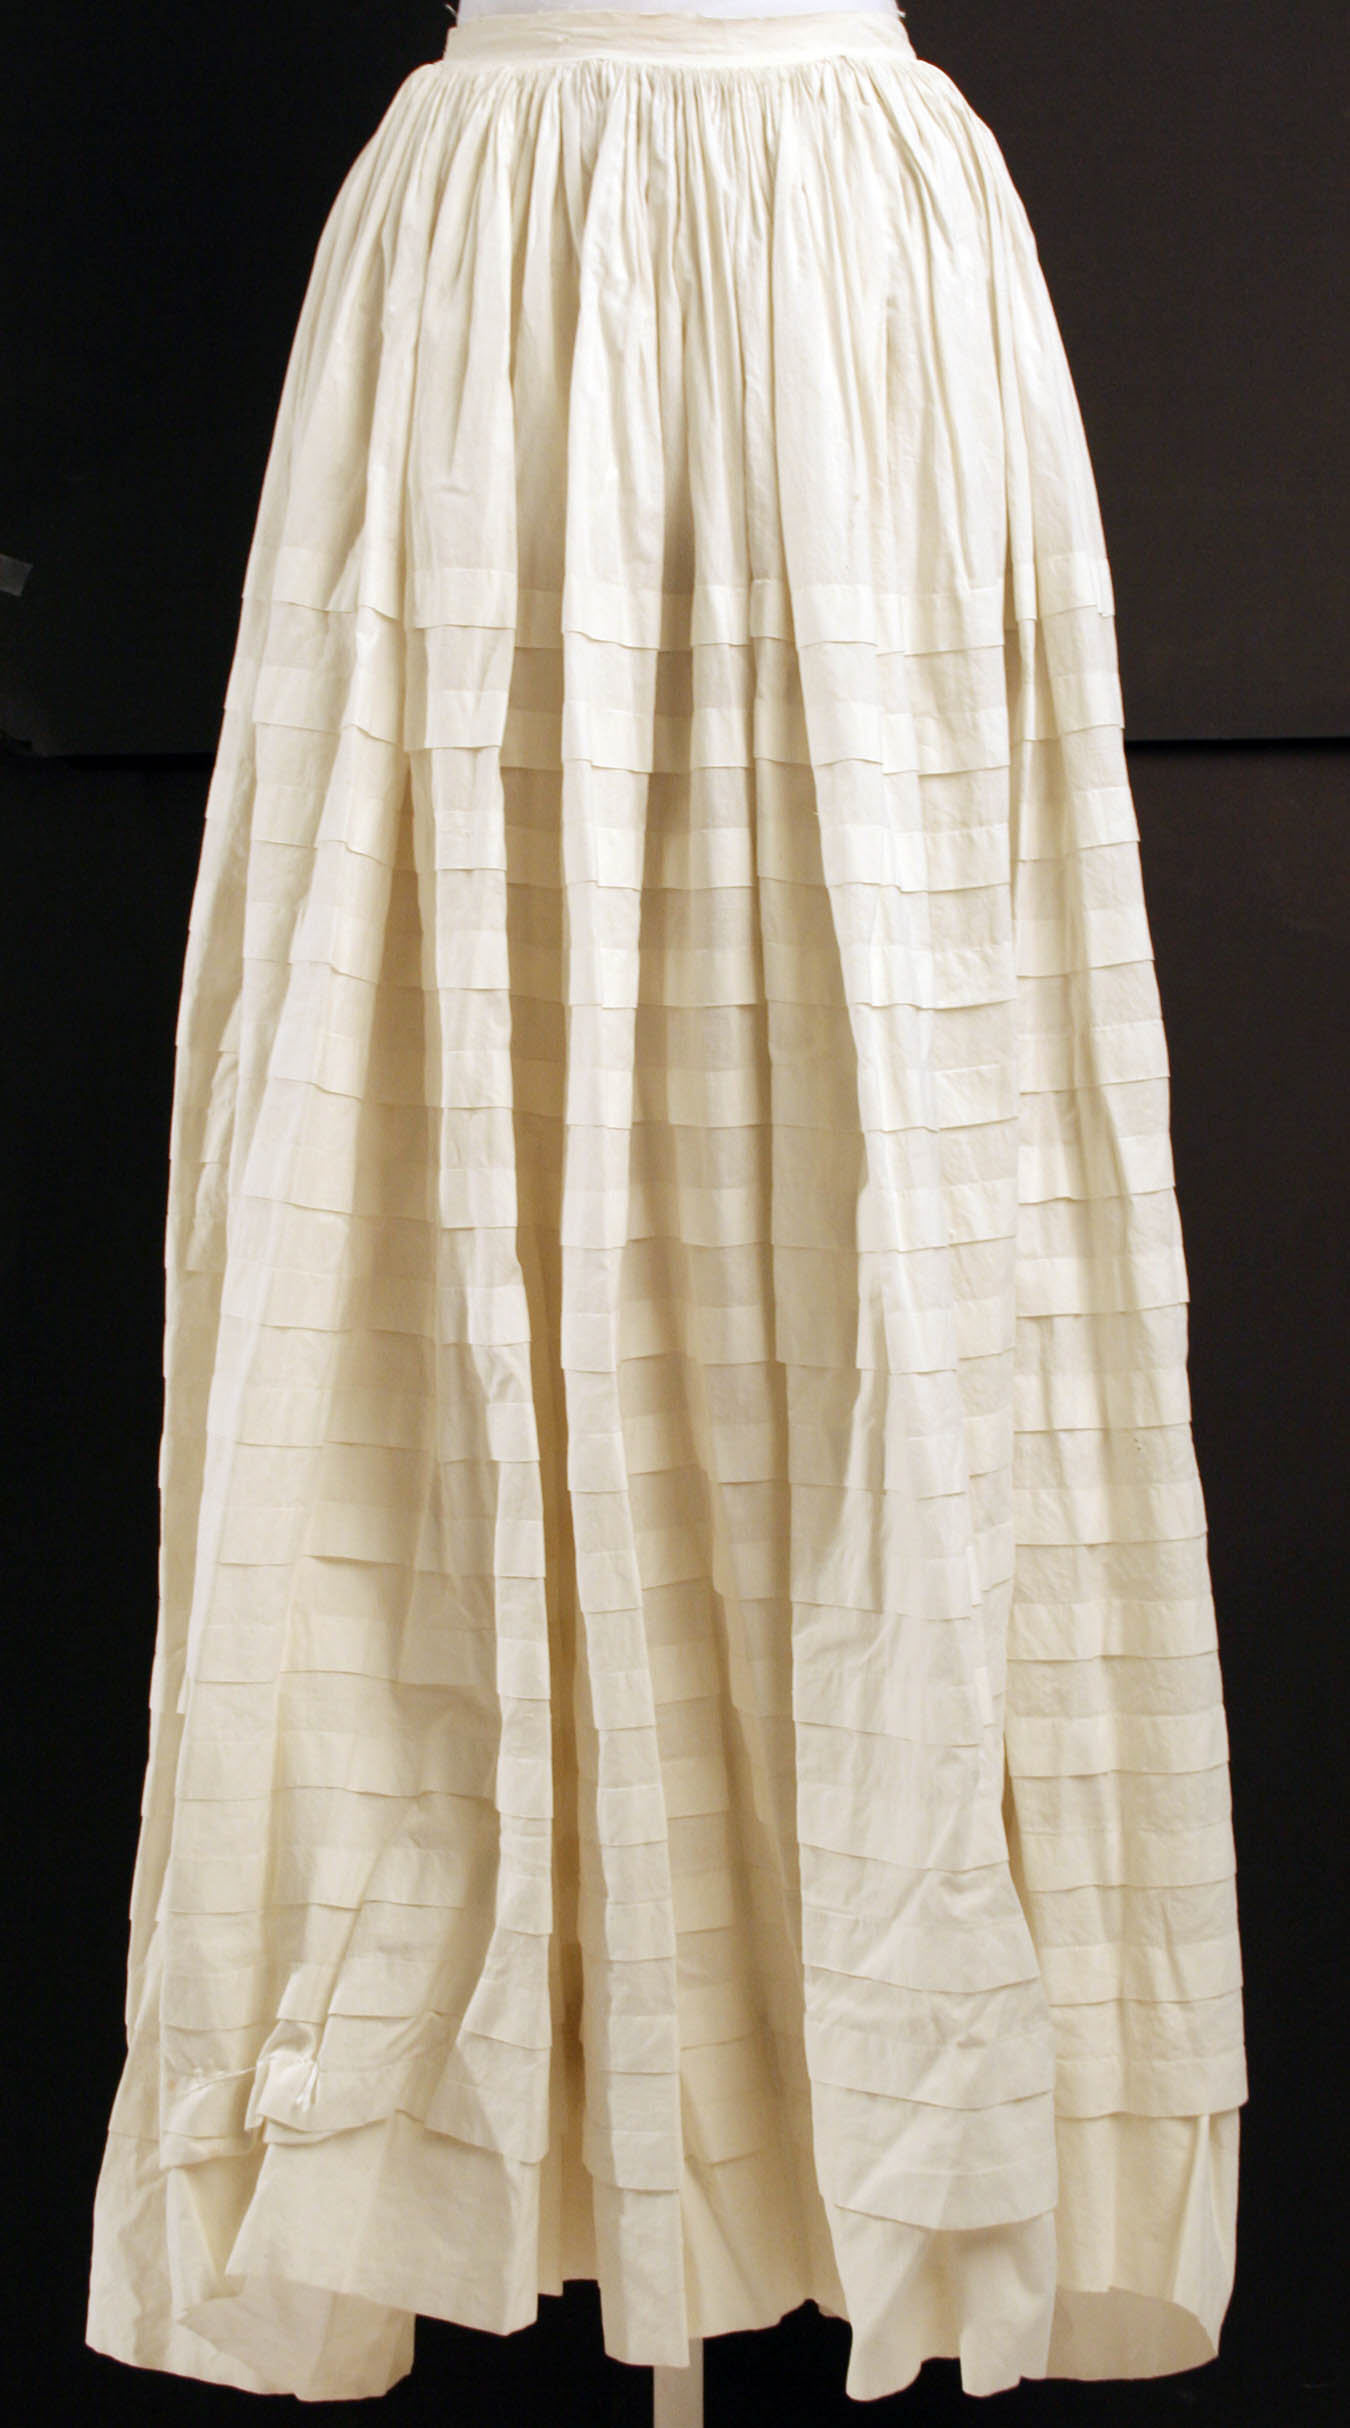 Petticoat | American or European | The Metropolitan Museum of Art